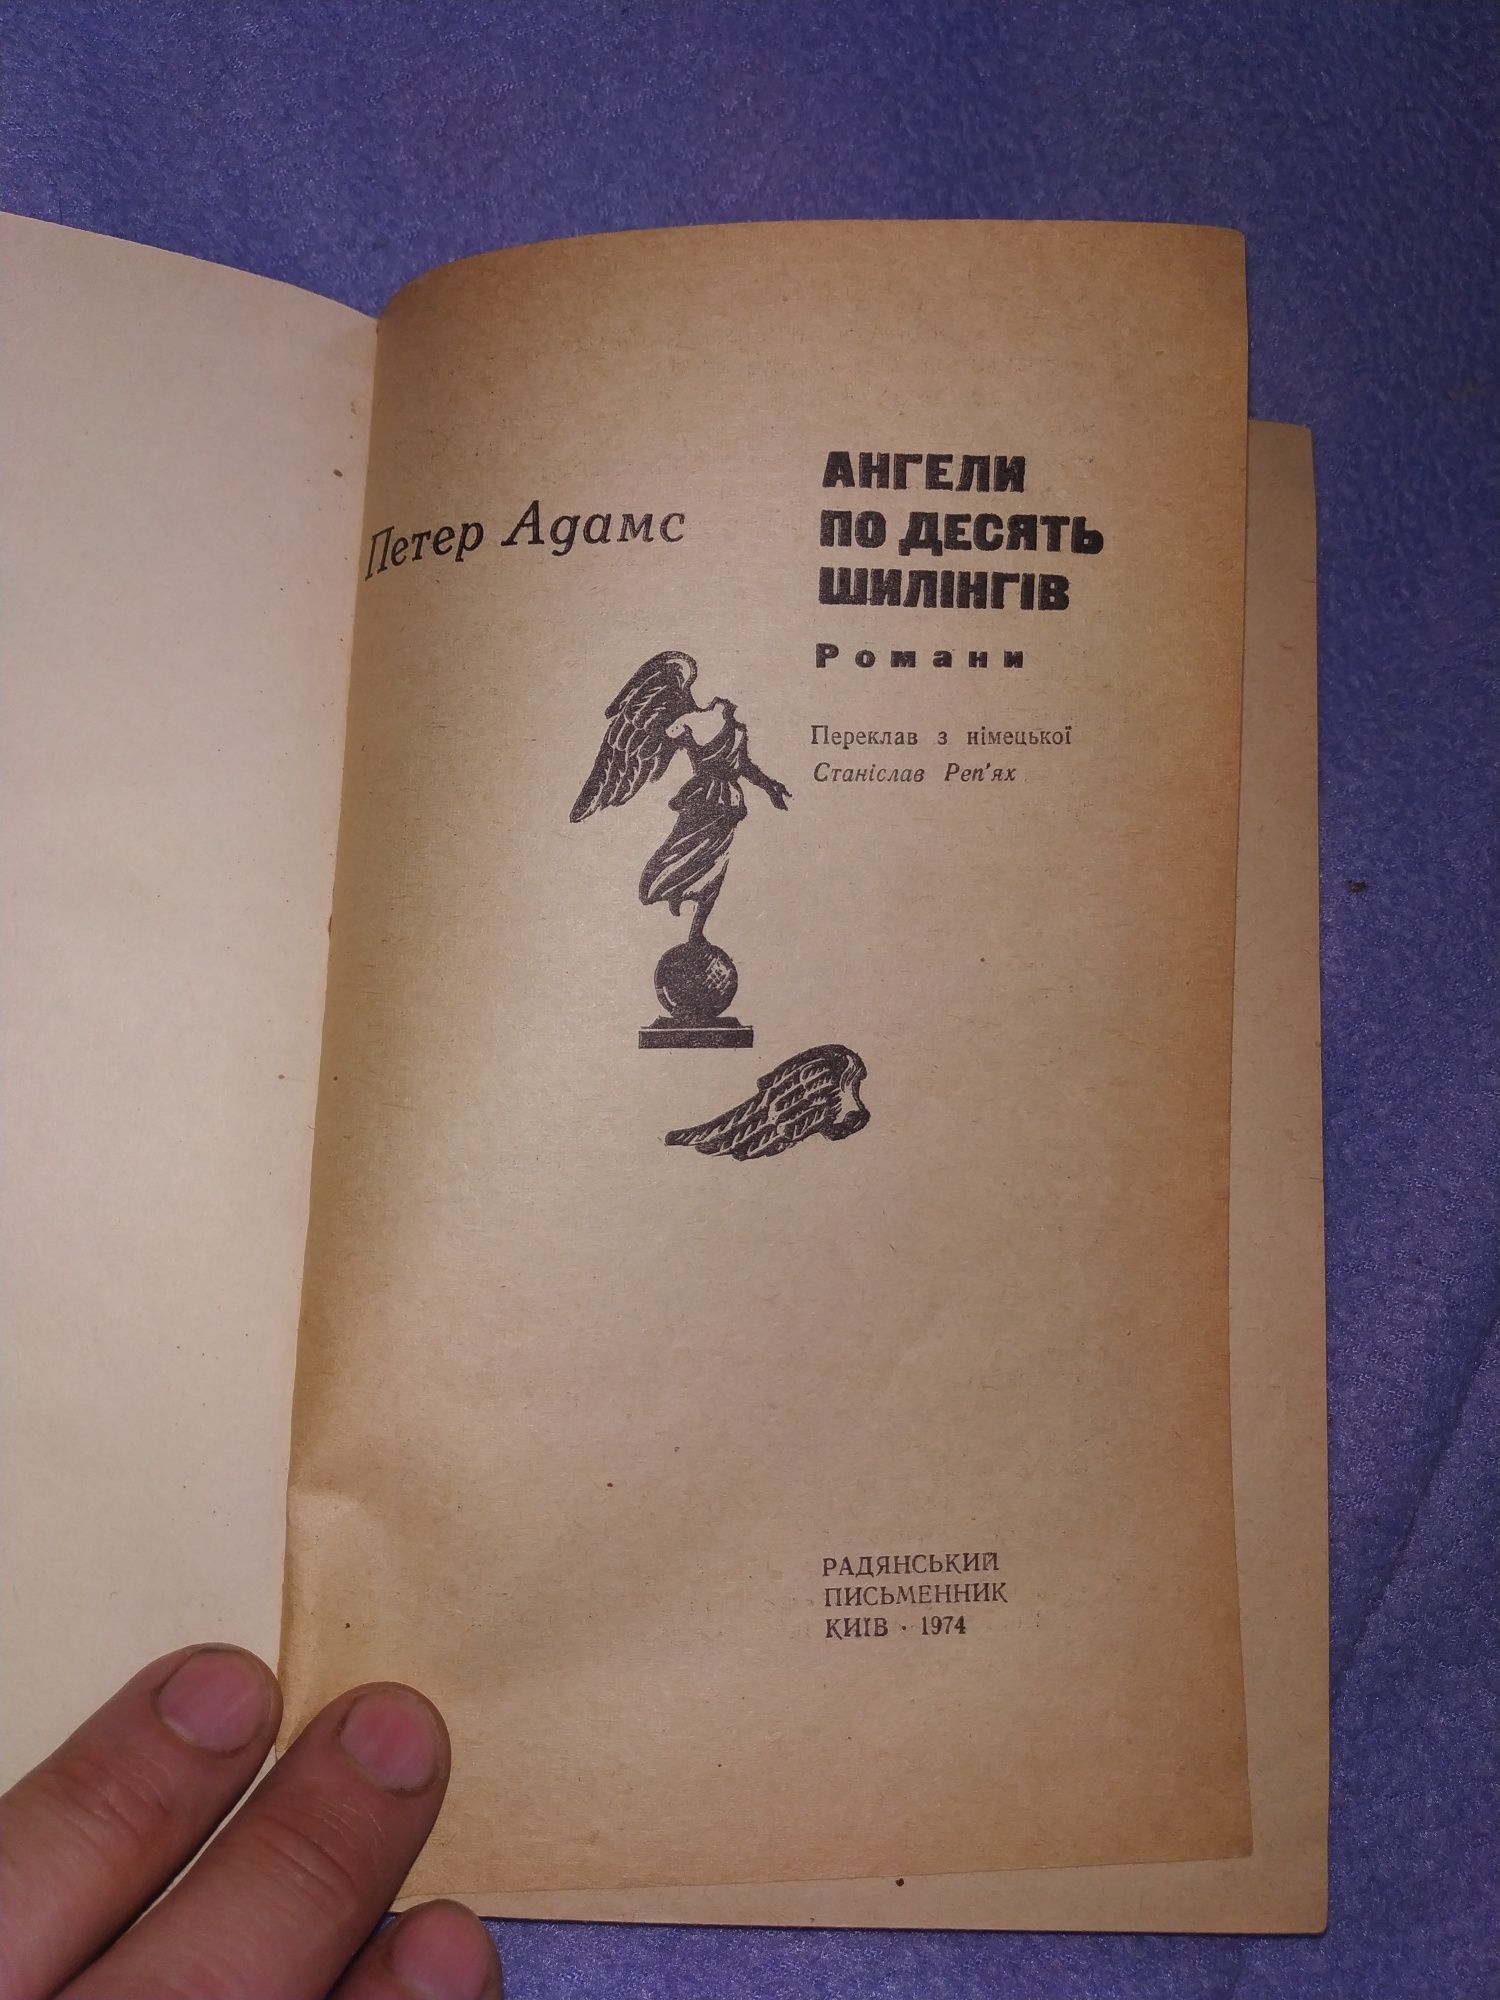 Петер Адамс. Ангели по десять шилінгів. Видання 1974. Київ